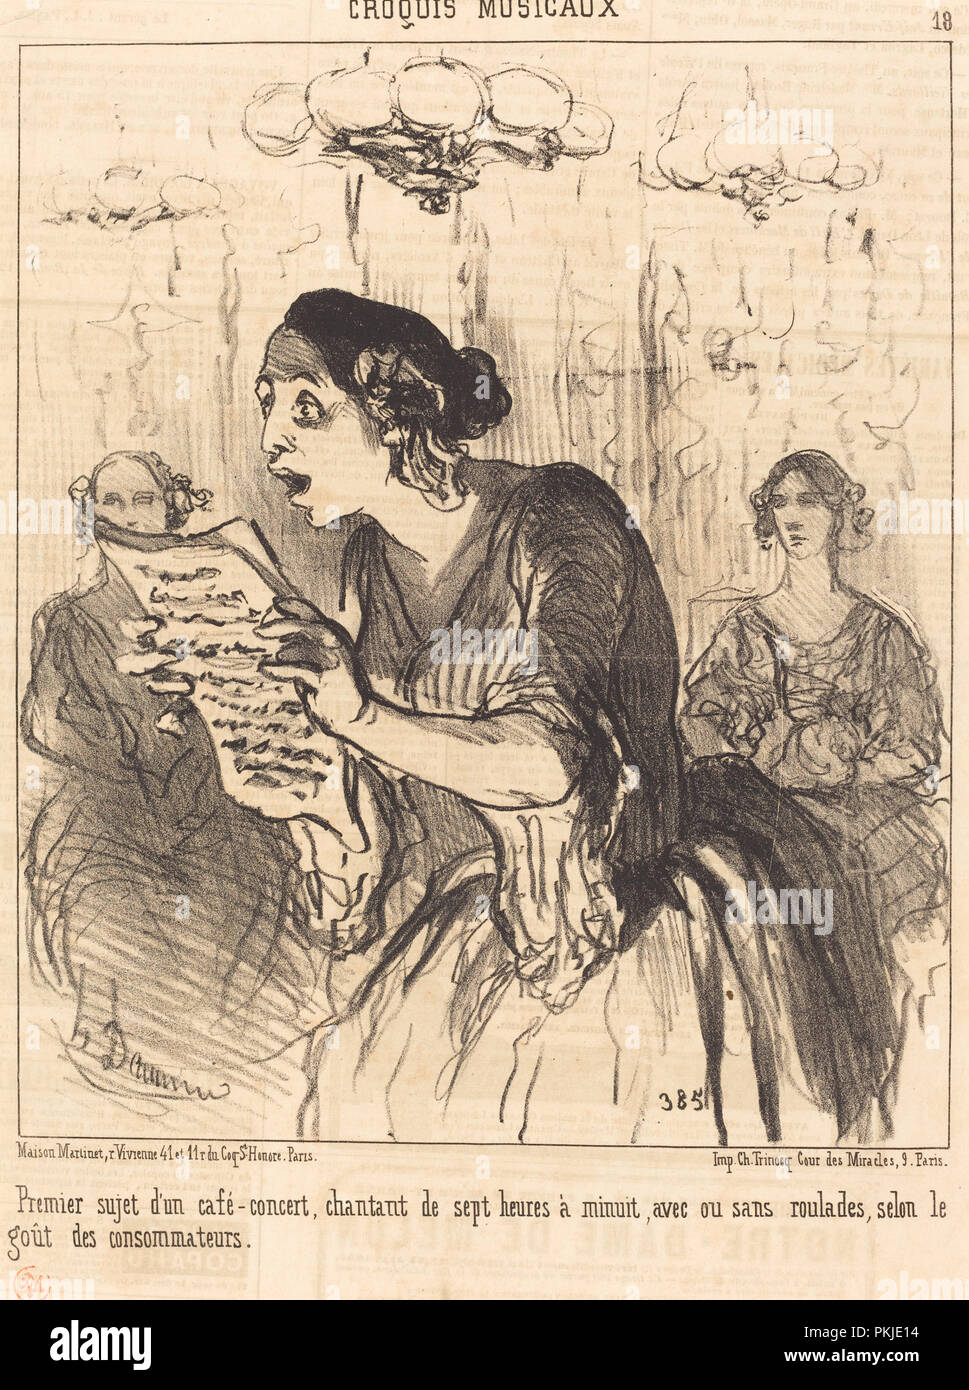 Premier sujet d'un café-concert chantant... Dated: 1852. Medium: lithograph on newsprint. Museum: National Gallery of Art, Washington DC. Author: HONORÉ DAUMIER. Stock Photo